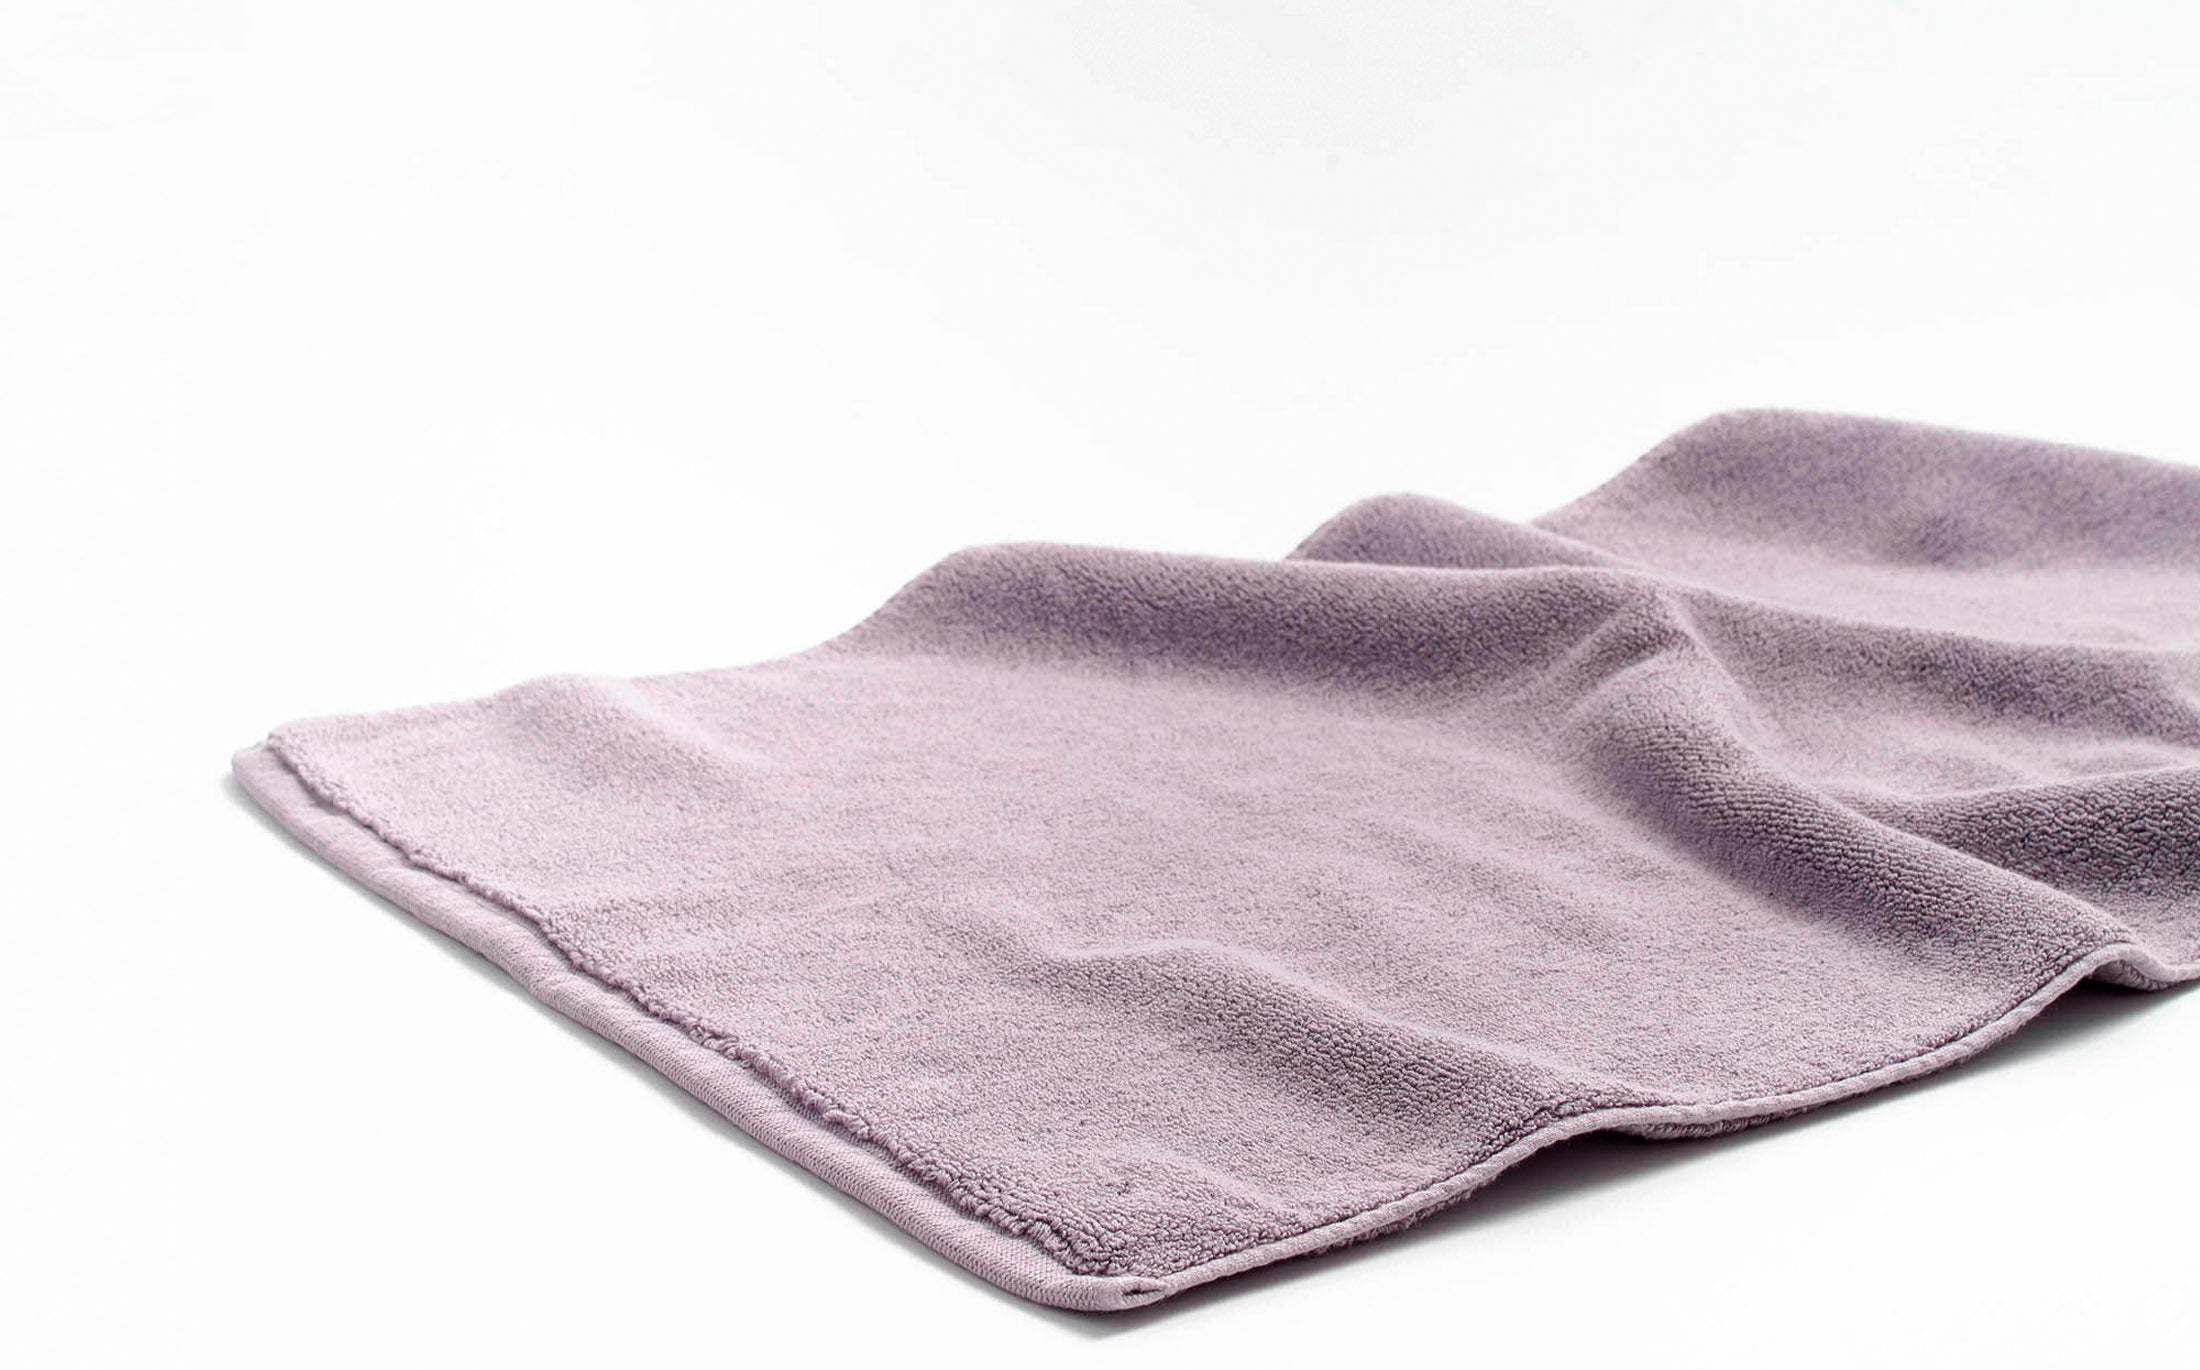 Cotton Color Bathmat - Greyish Violet